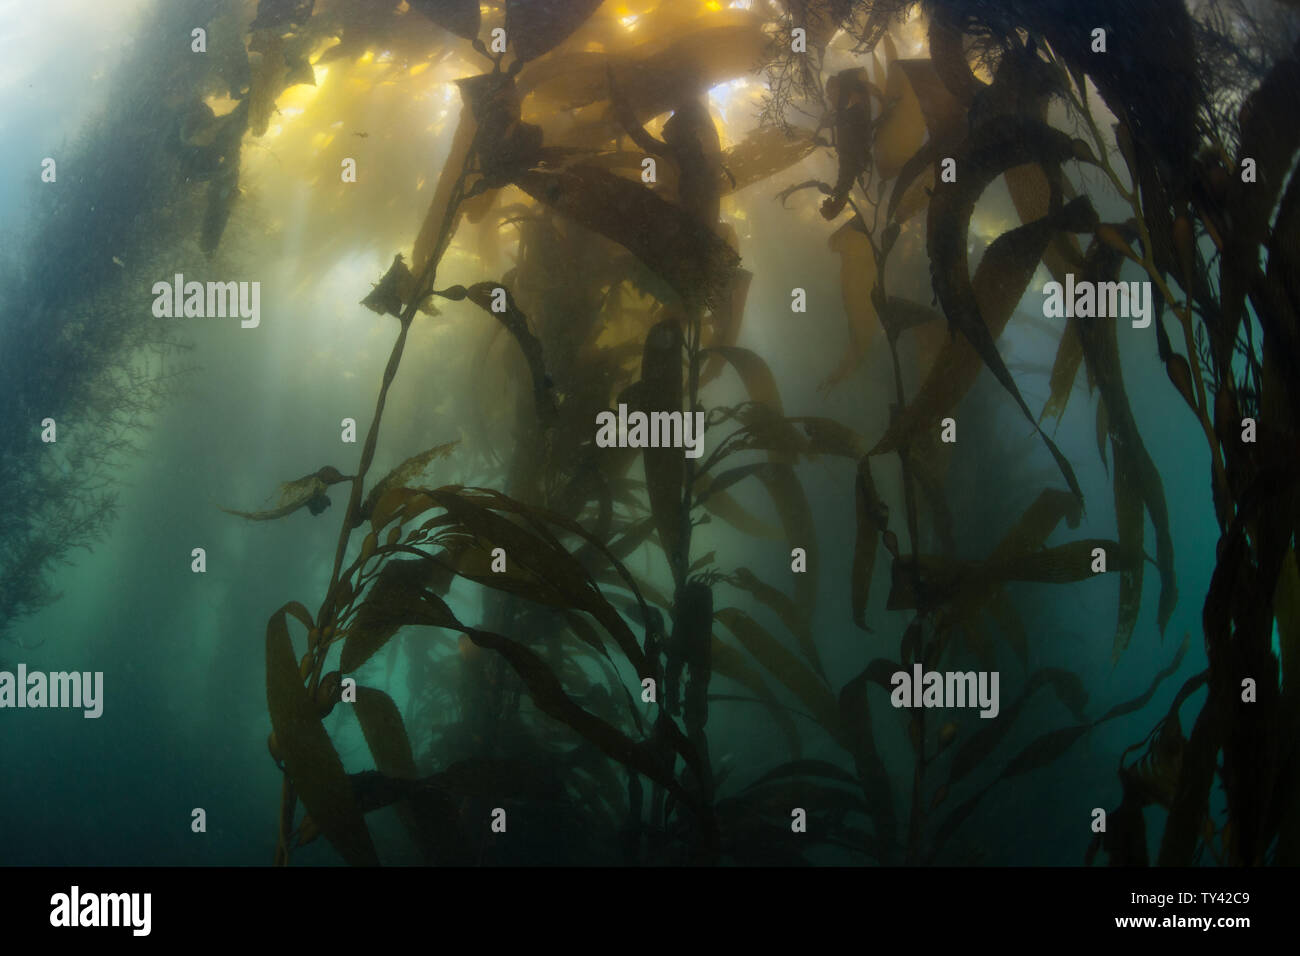 Una foresta di kelp gigante, Macrocystis pyrifera, cresce lungo la costa della California. Questa è una specie di alghe marine che può crescere in modo estremamente rapido. Foto Stock